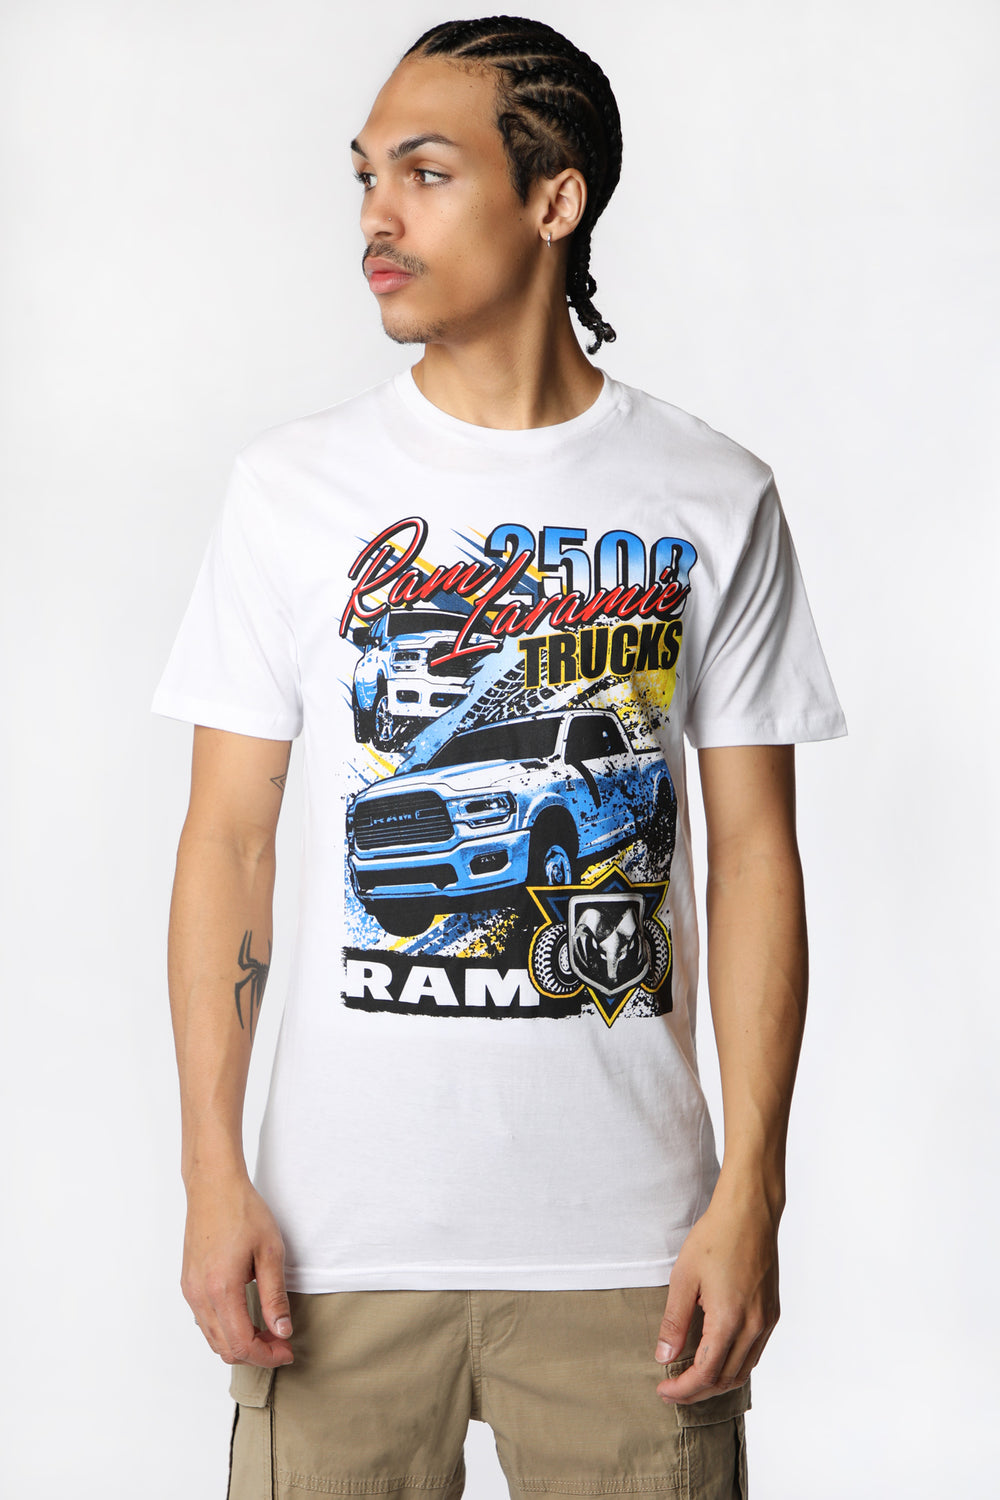 Mens Ram 2500 Laramie Trucks T-Shirt Mens Ram 2500 Laramie Trucks T-Shirt